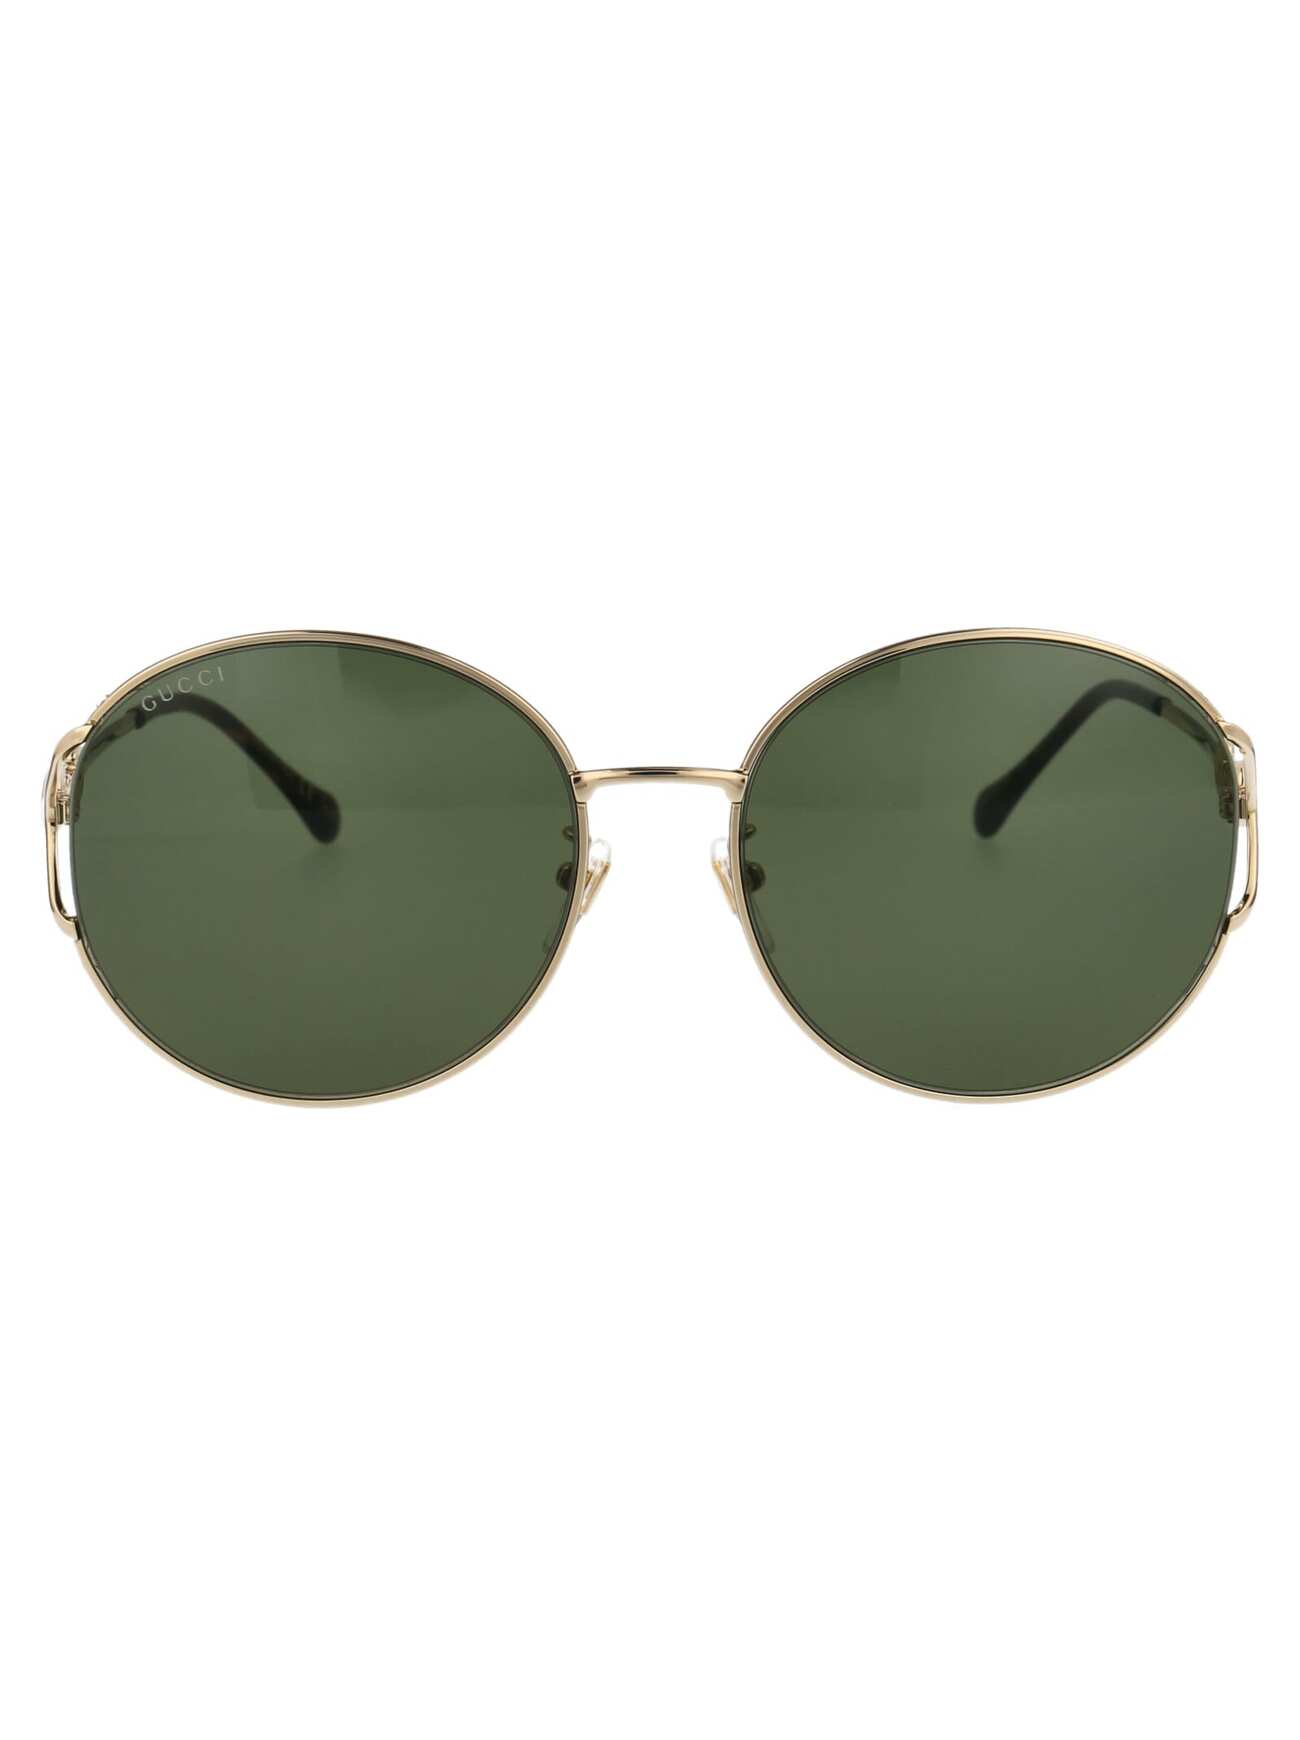 Gucci Eyewear Gg1017sk Sunglasses in gold / green